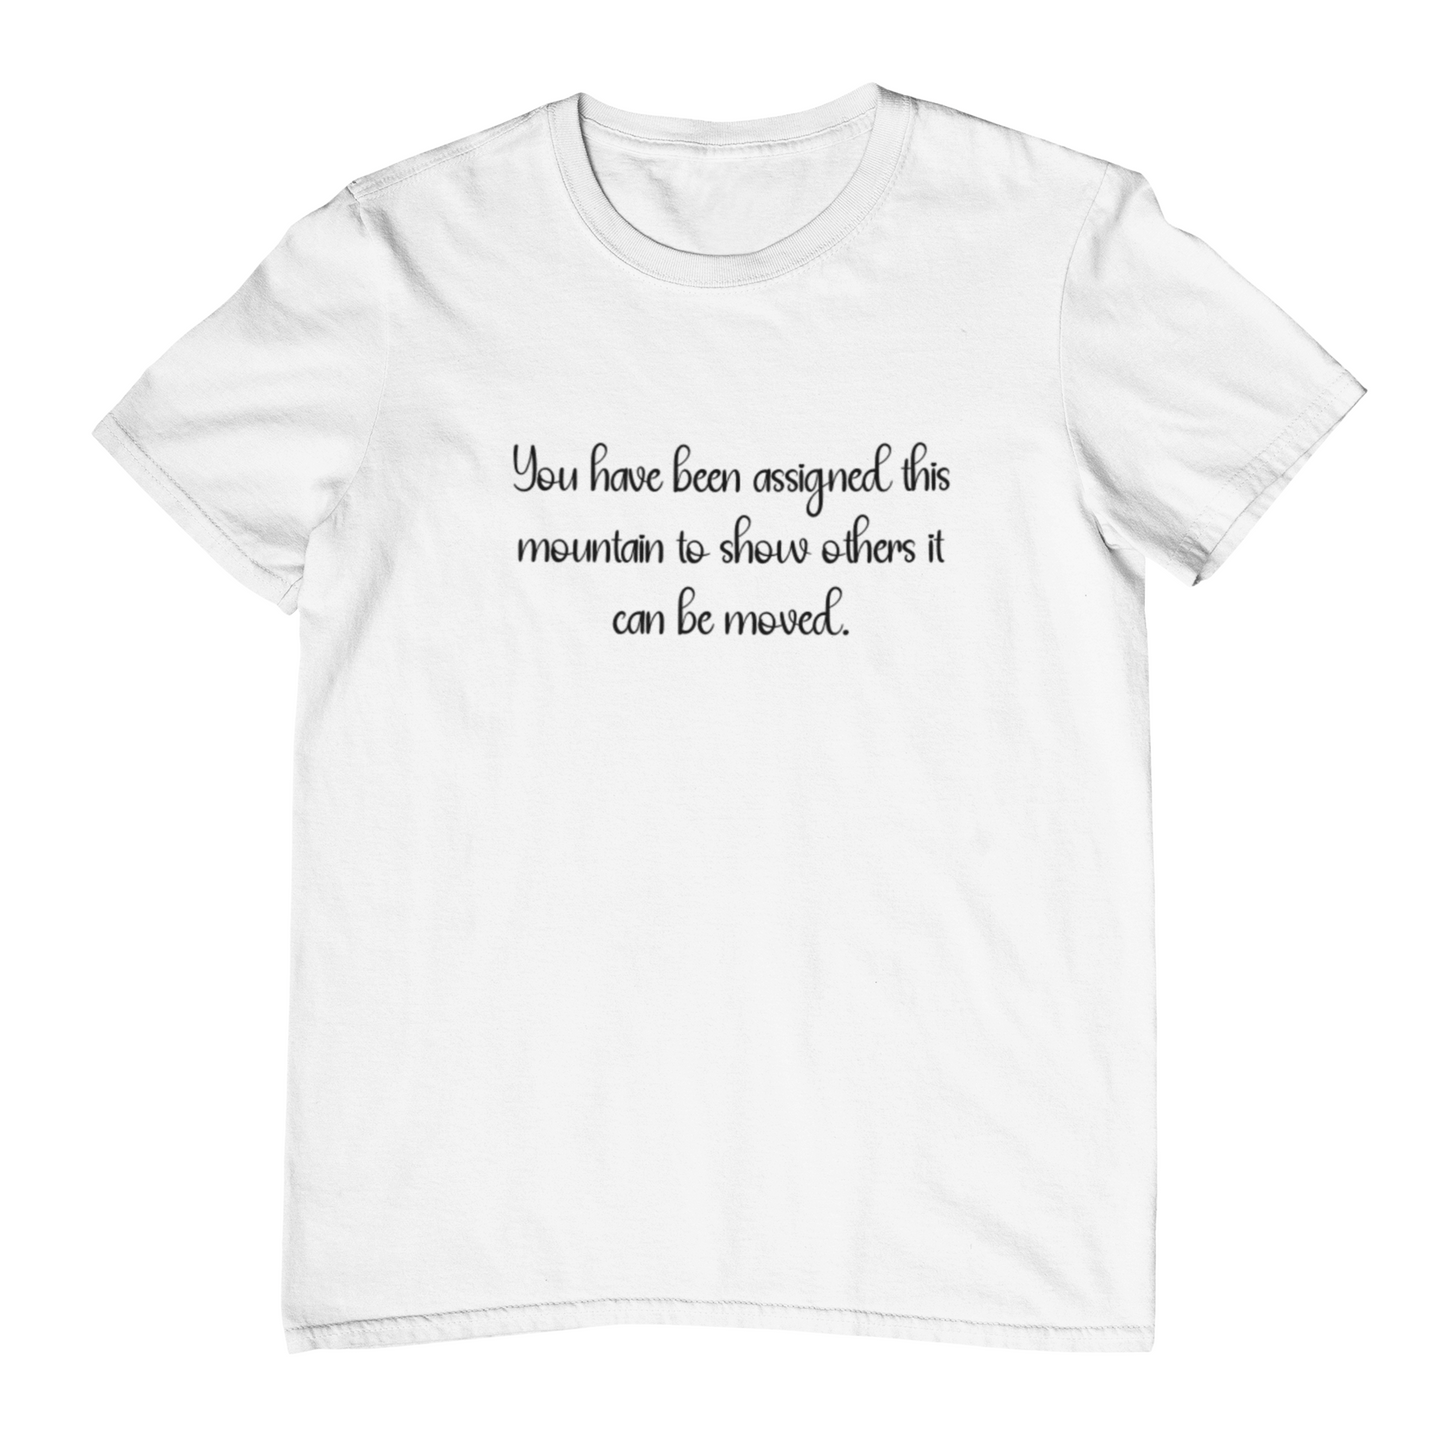 Cancer Awareness T-Shirts